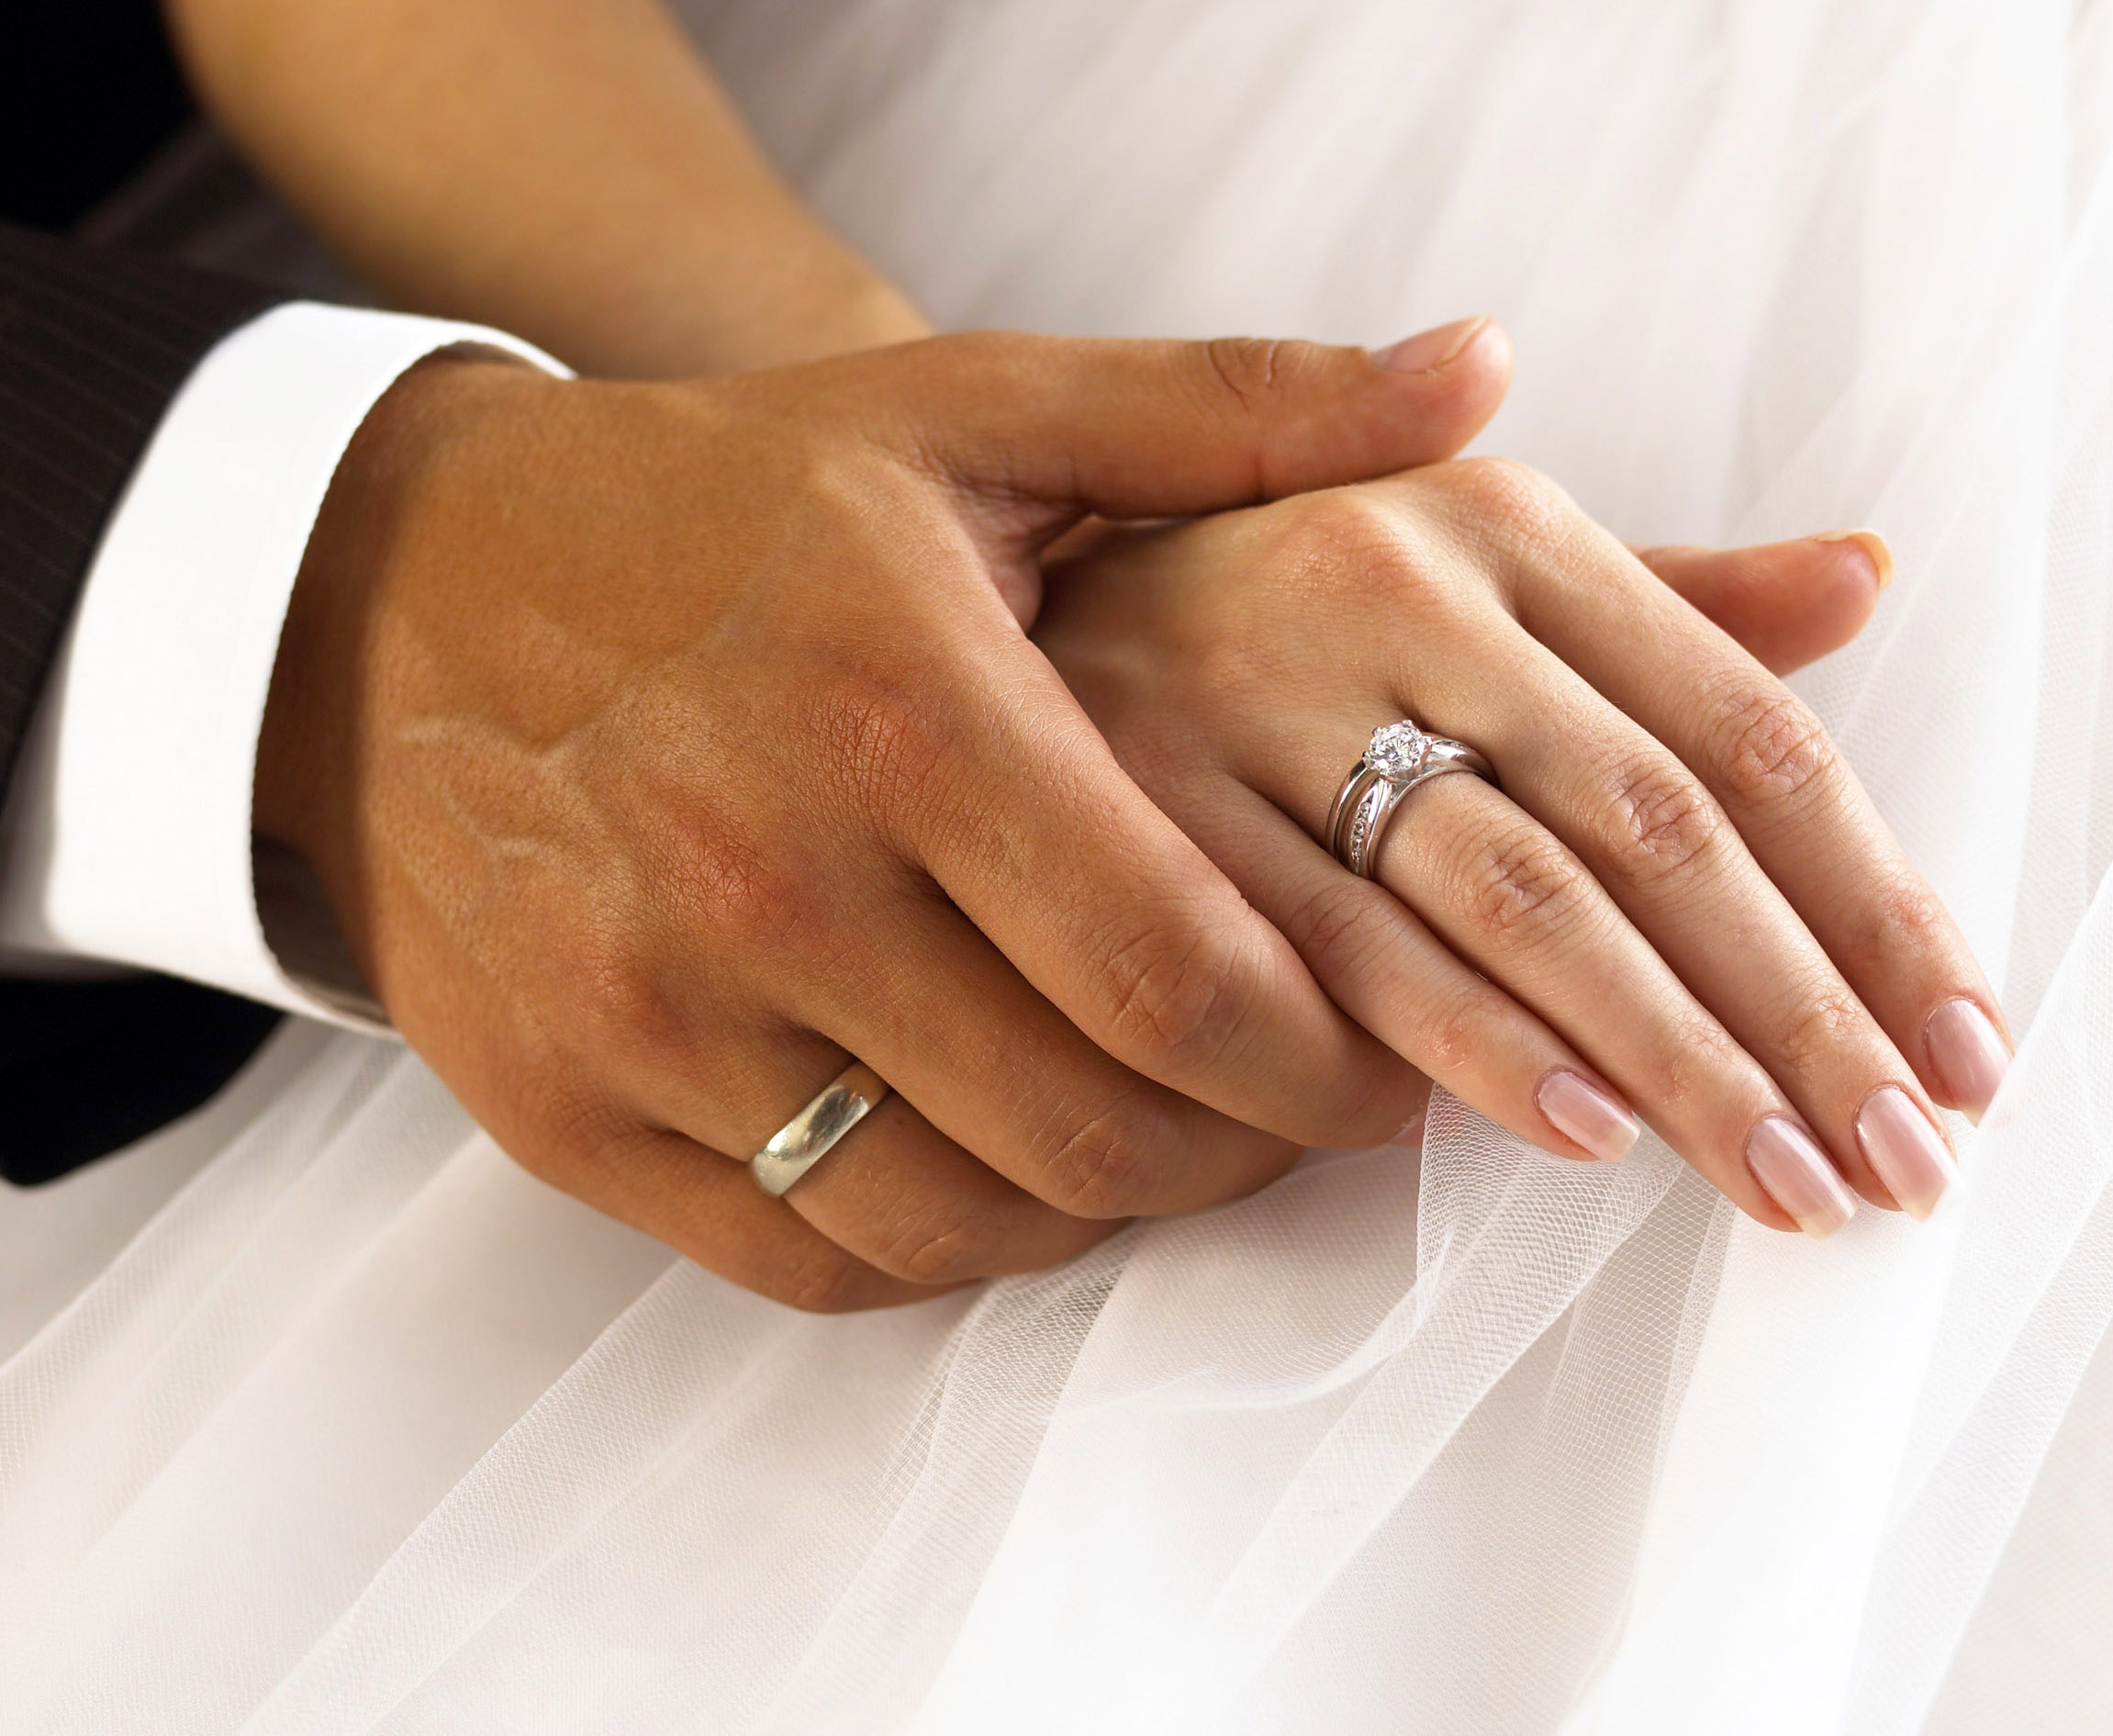 Кольцо когда замужем. Обручальные кольца на руках. Свадебные кольца на руках. Обручальное кольцо на пальце. Обручальное и помолвочное кольцо.